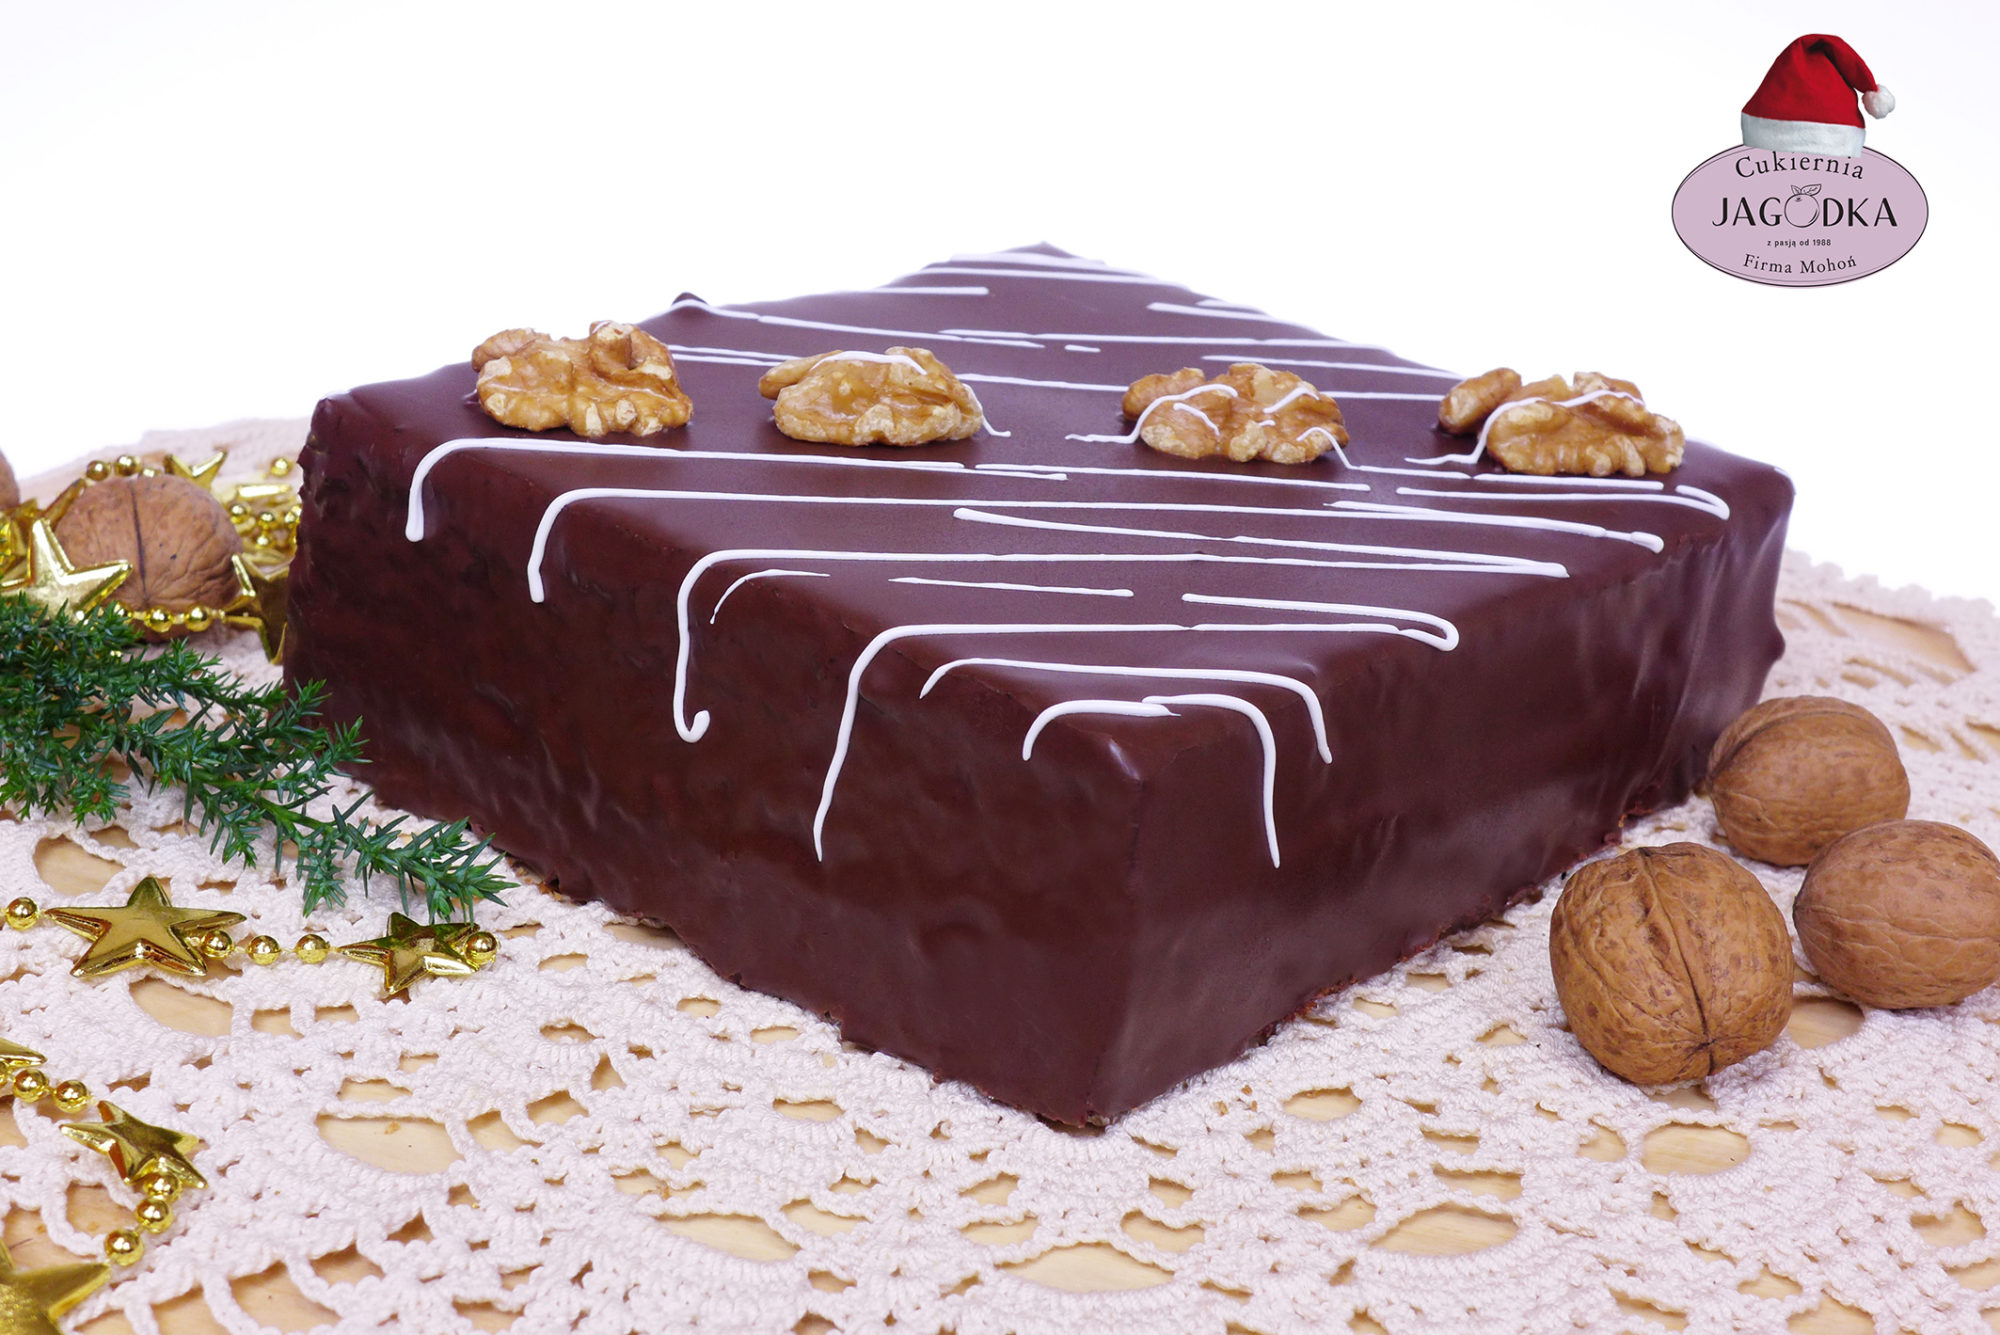 piernik w czekoladzie 